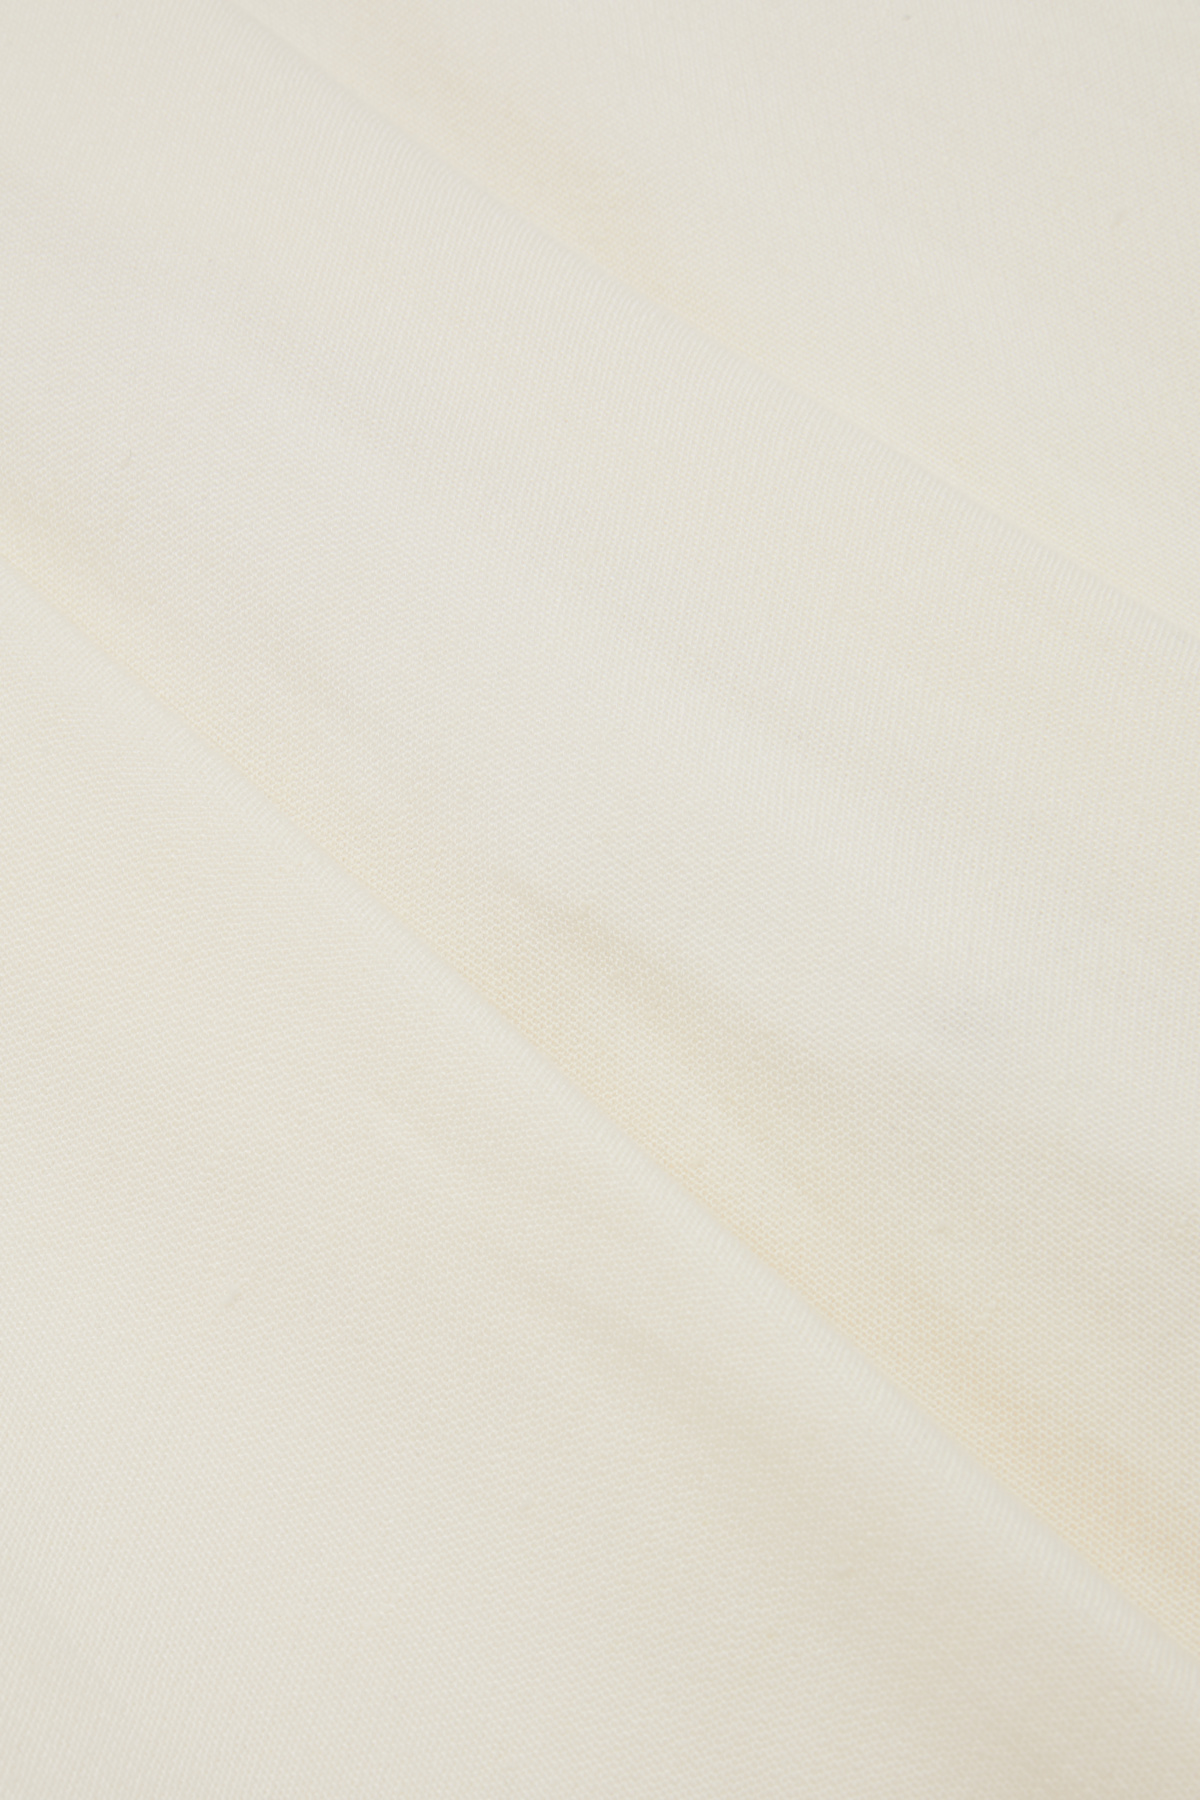 IRO High-Waist Anzughose mit Leinen in Off-White 440558